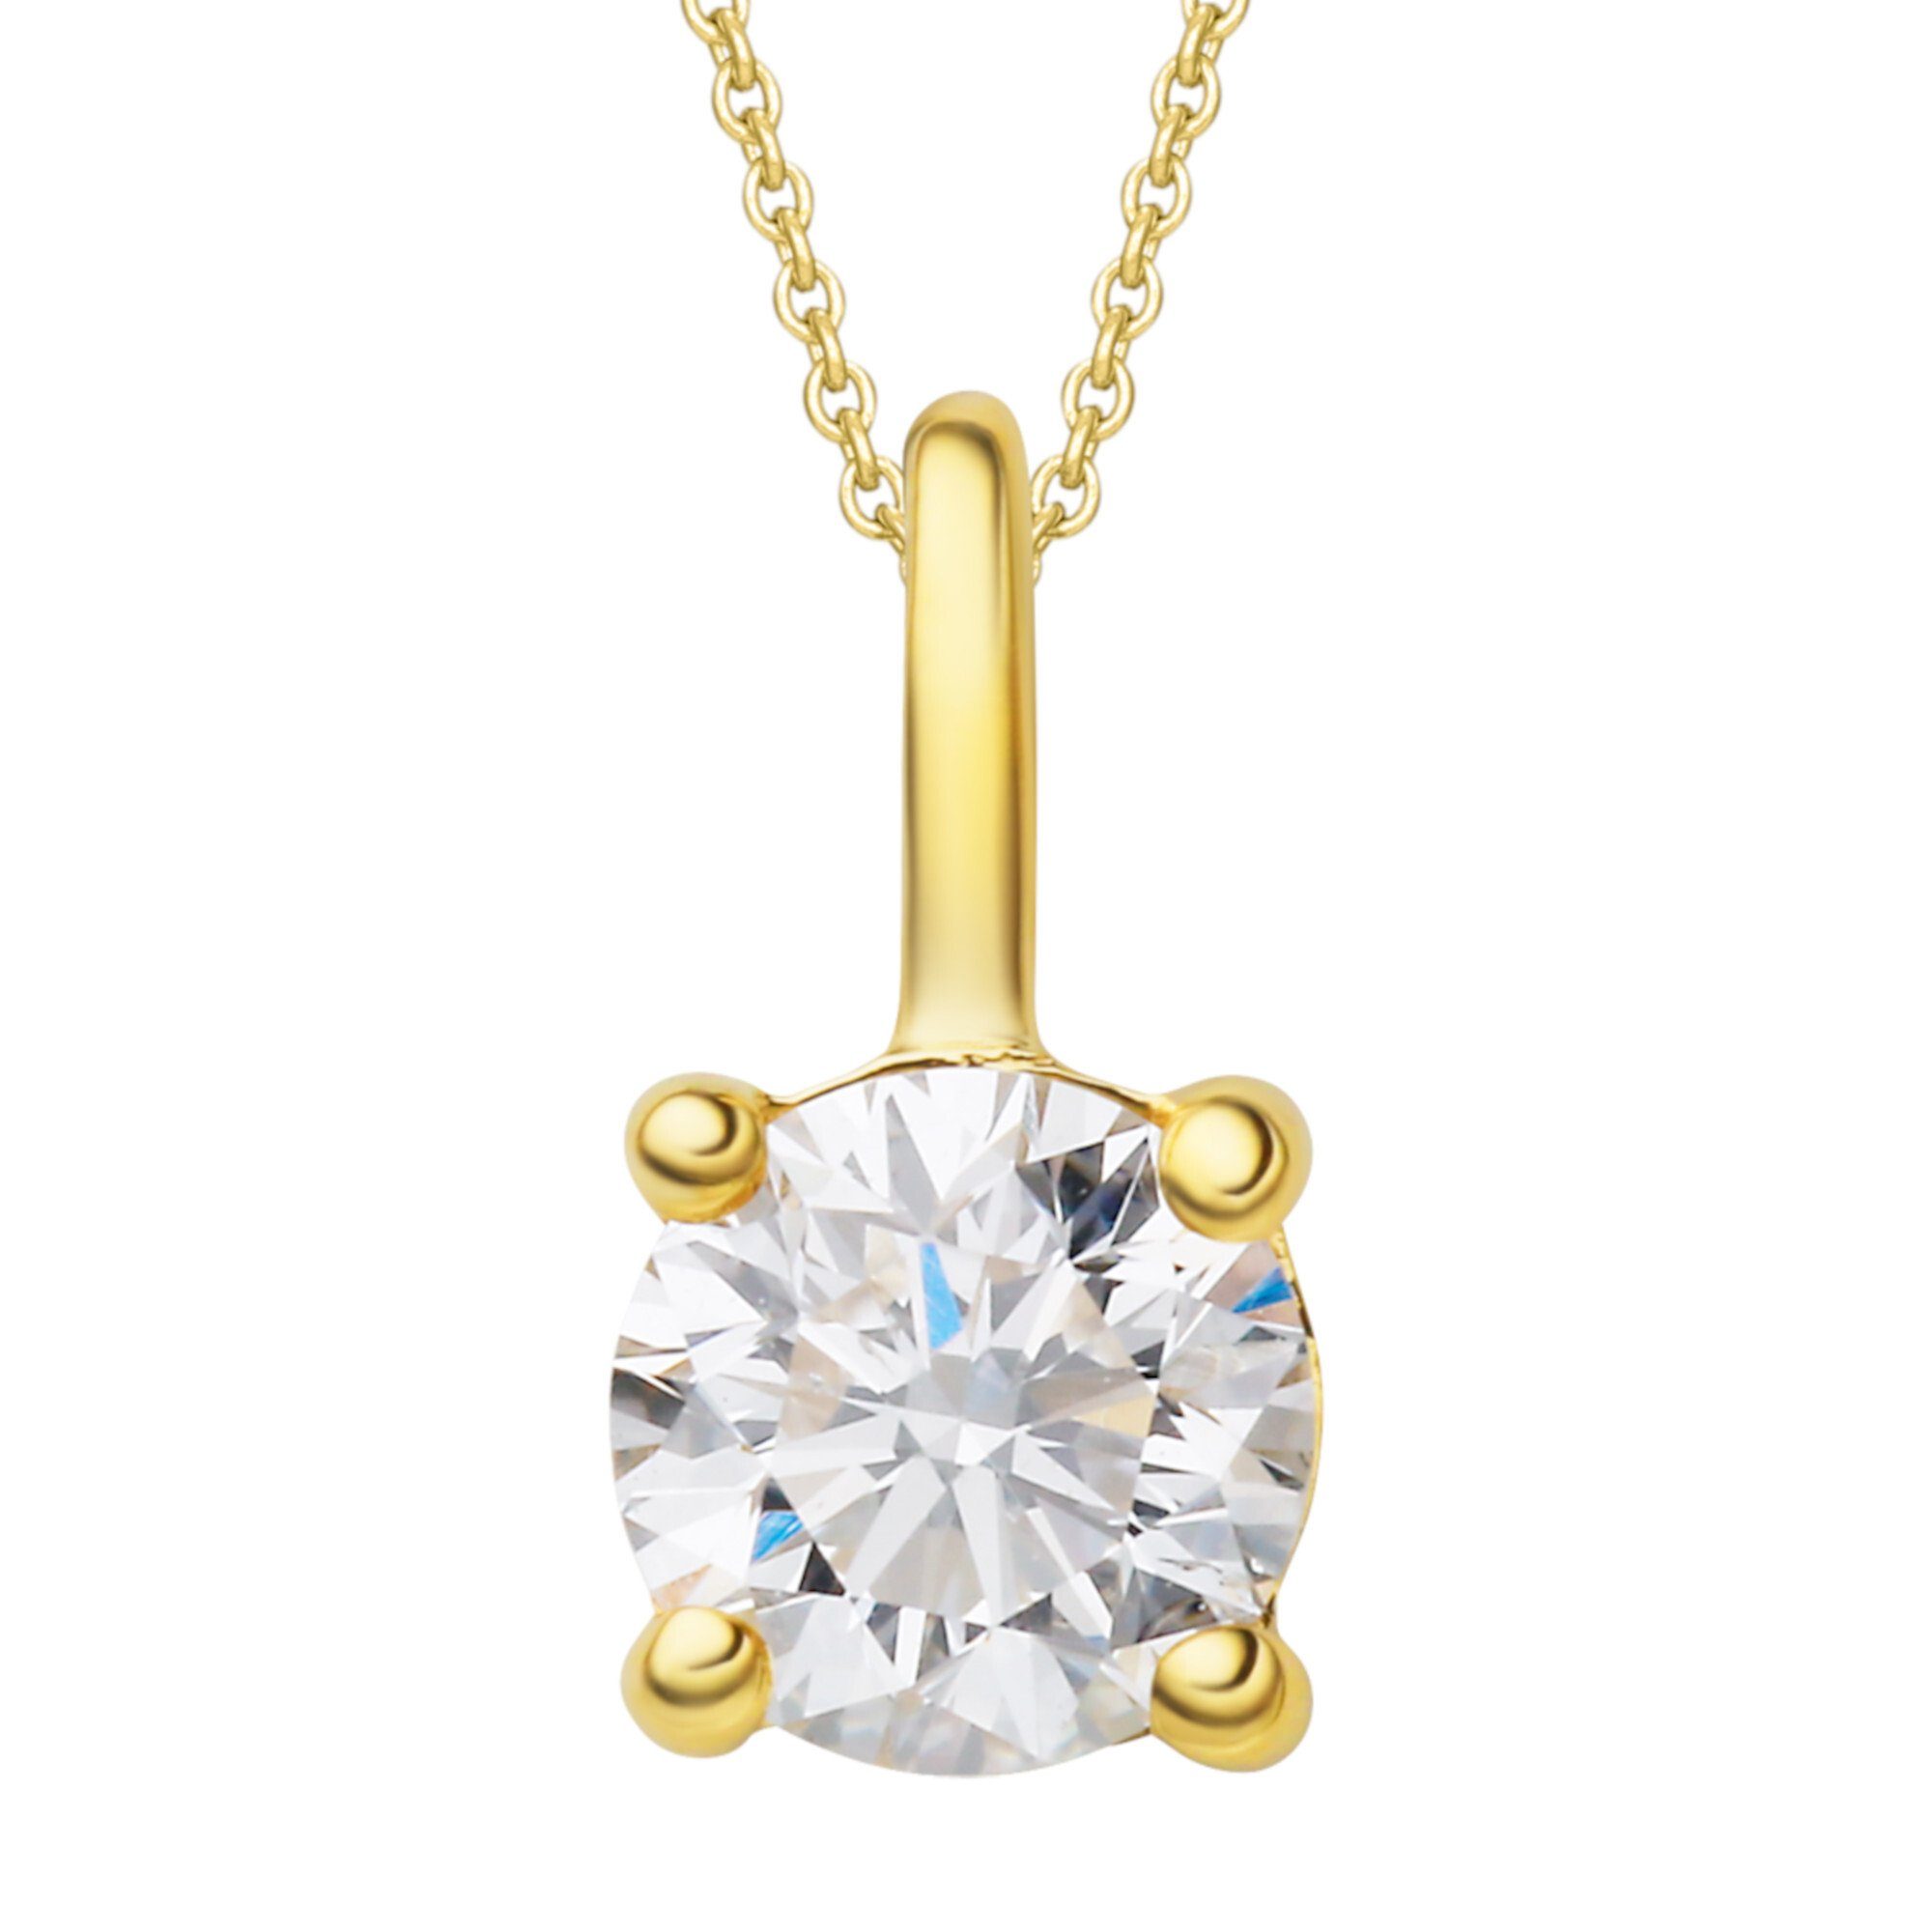 ONE ELEMENT Kettenanhänger 0.25 ct Diamant Brillant Anhänger aus 750 Gelbgold, Damen Gold Schmuck